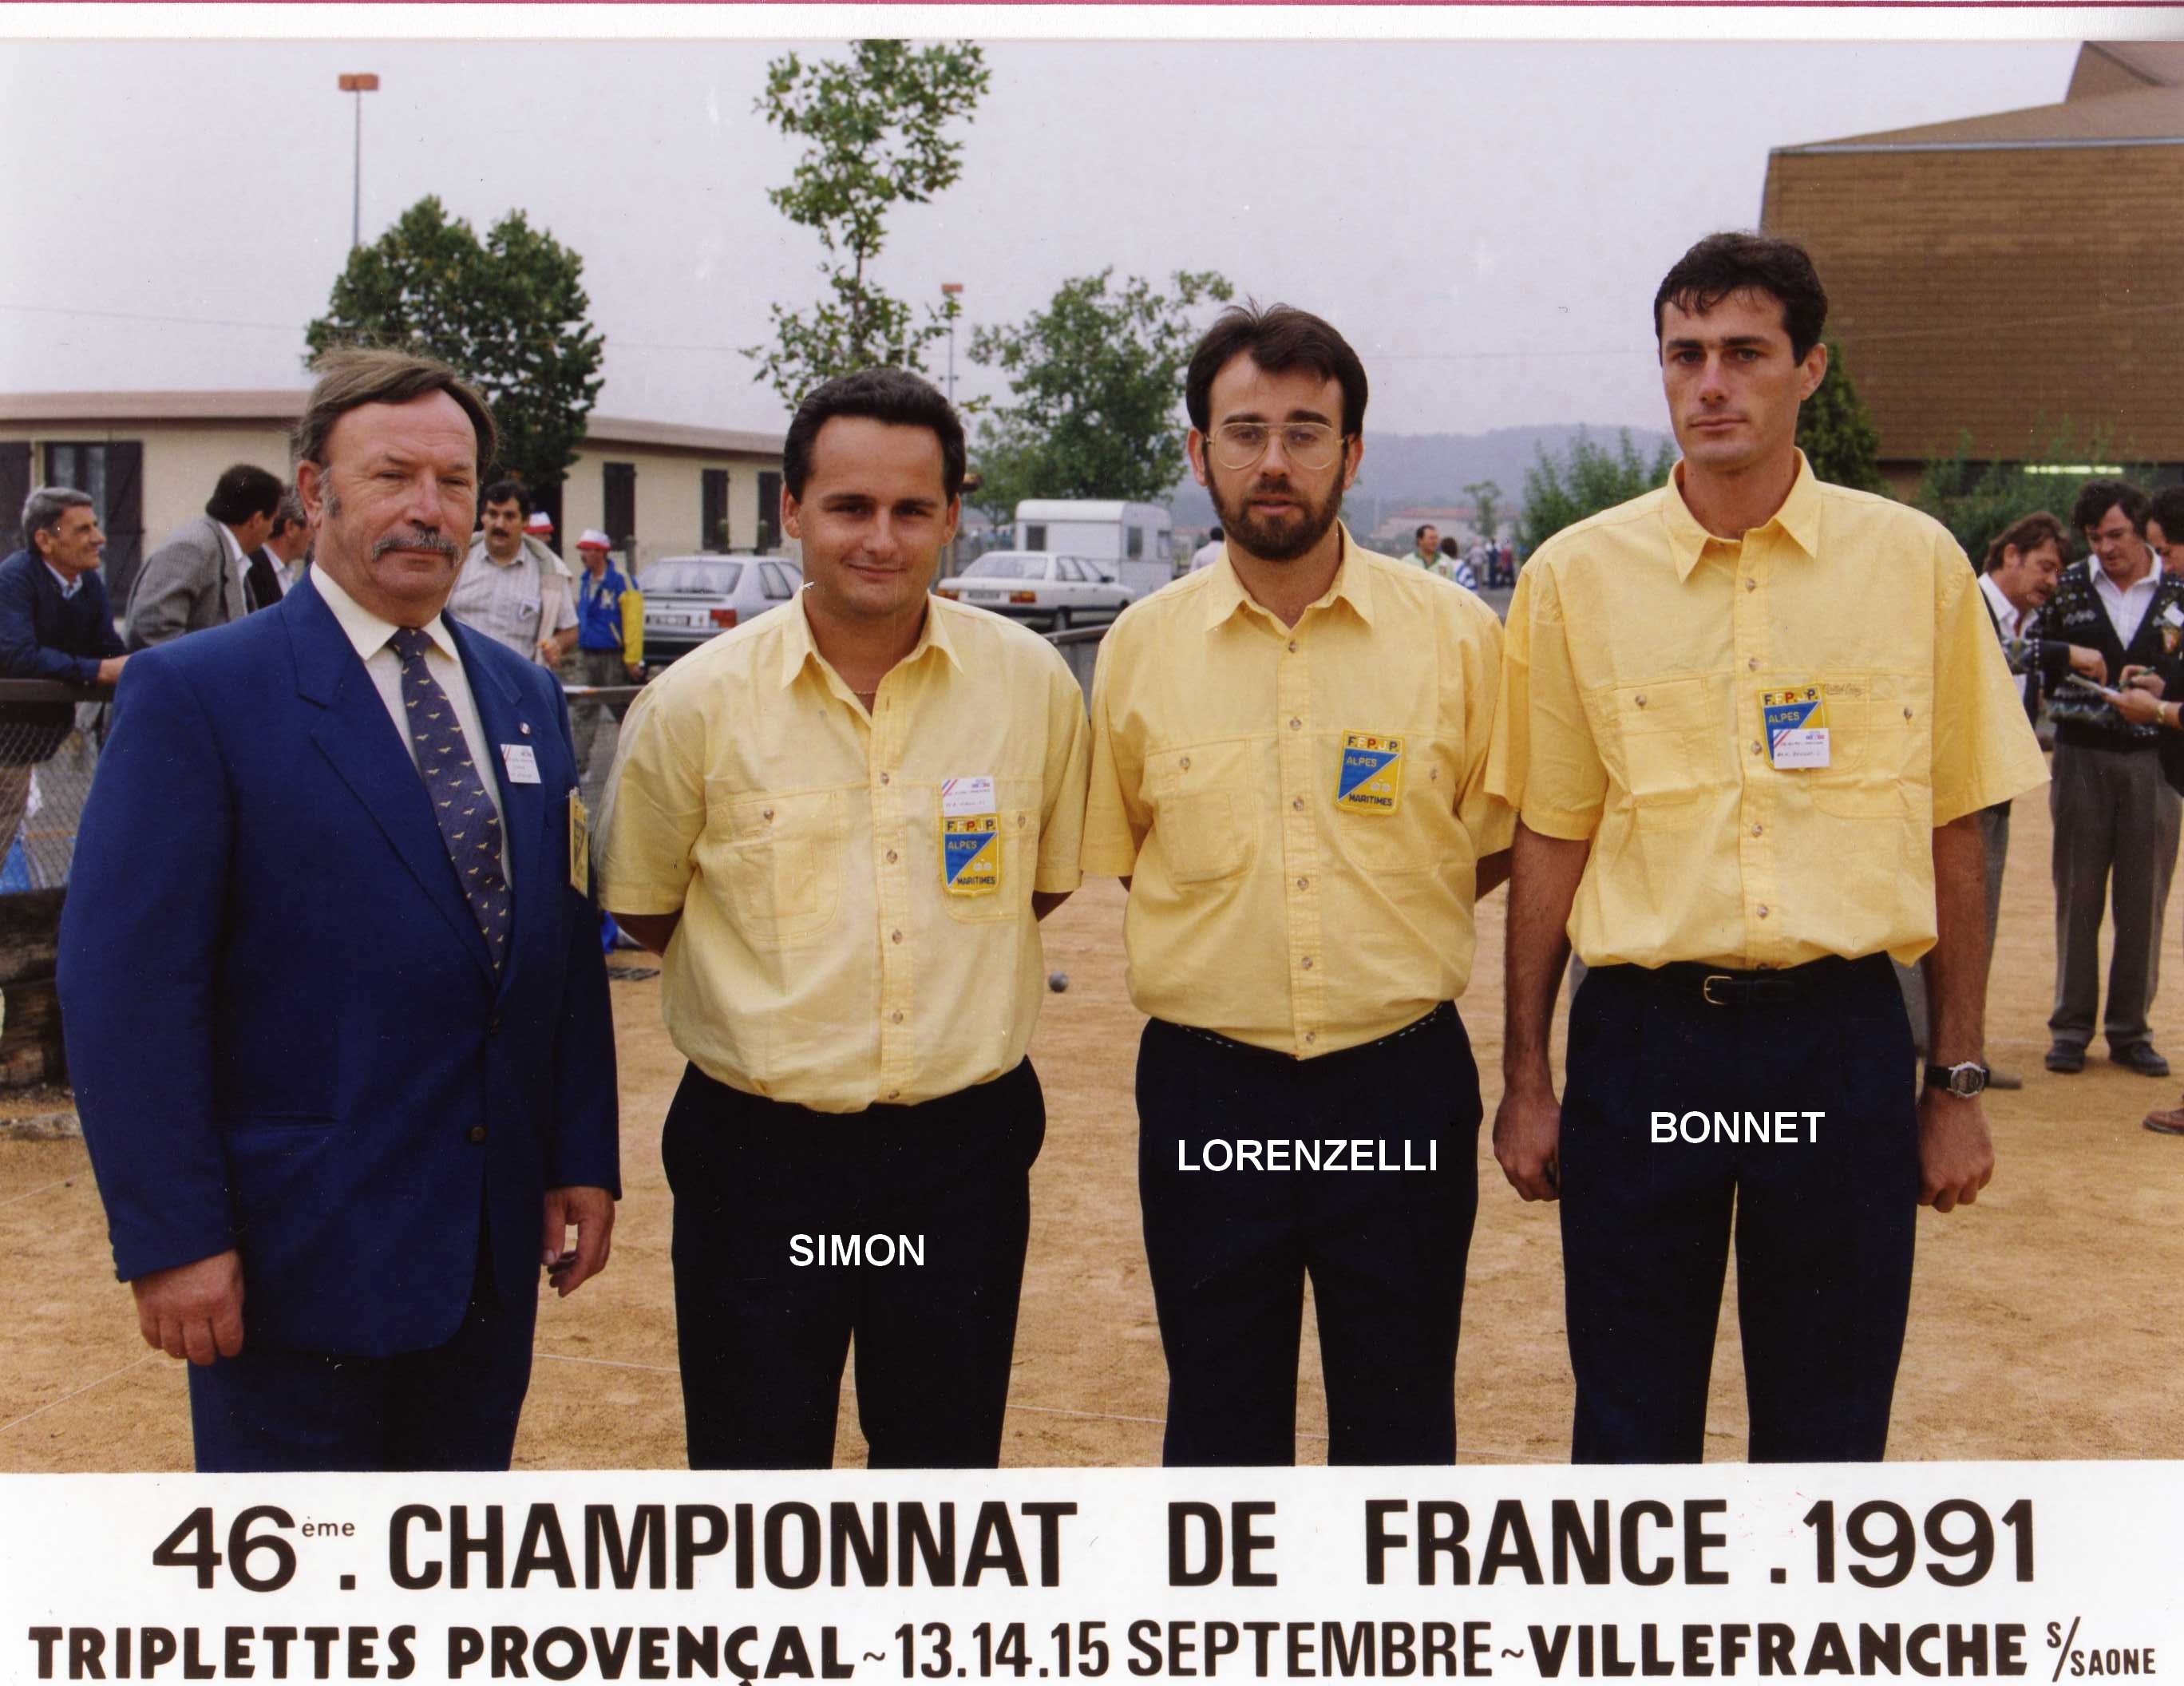 2ème France triplettes au Jeu Provençal en 1991 perdu en 1/16 contre VILLARD - D'APONTE - ALLASIO du 13